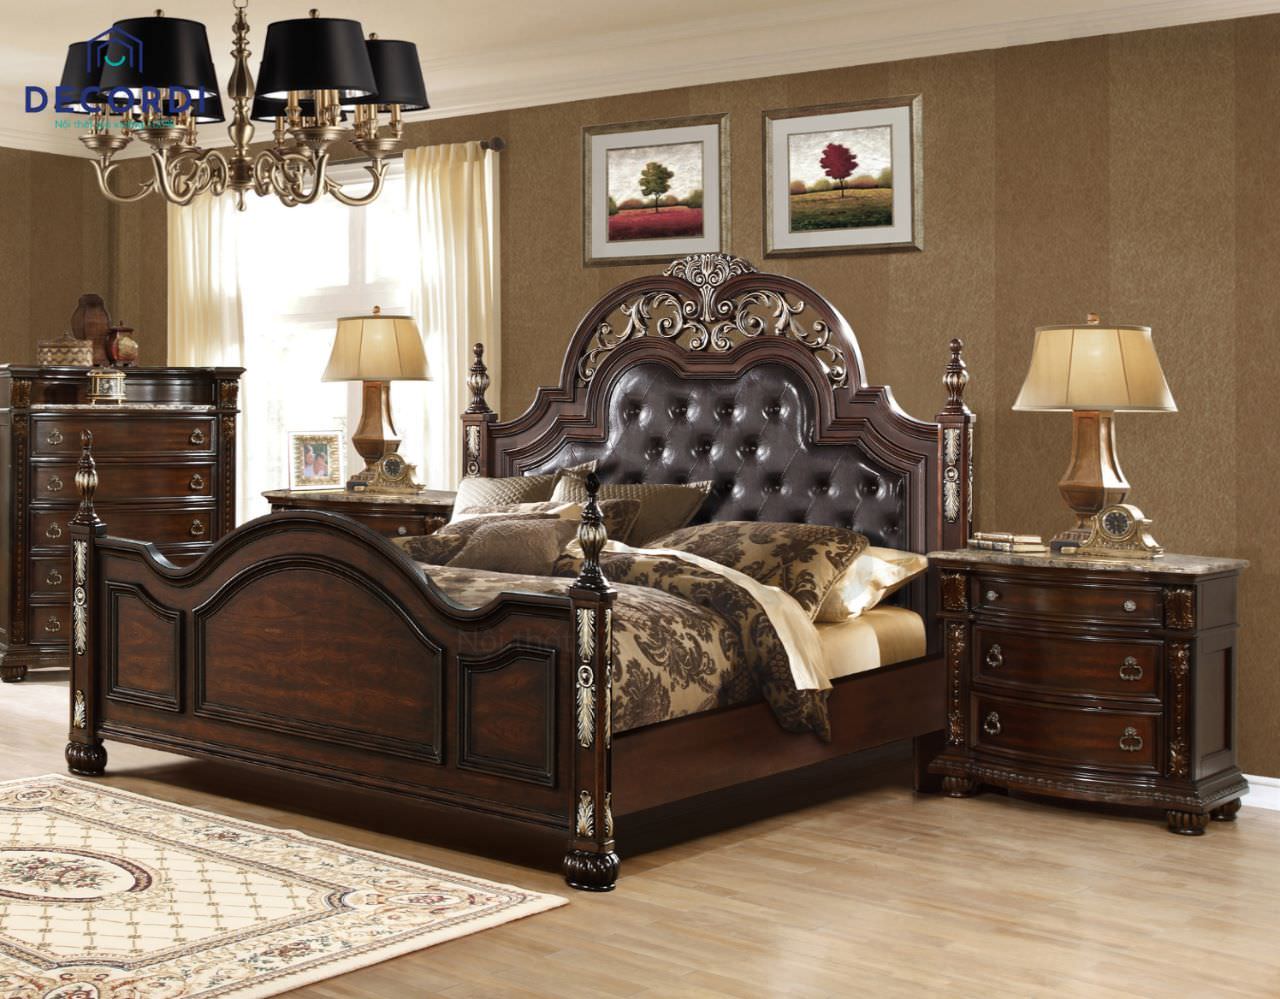 Nội thất phòng ngủ gỗ óc chó được thiết kế theo phong cách tân cổ điển